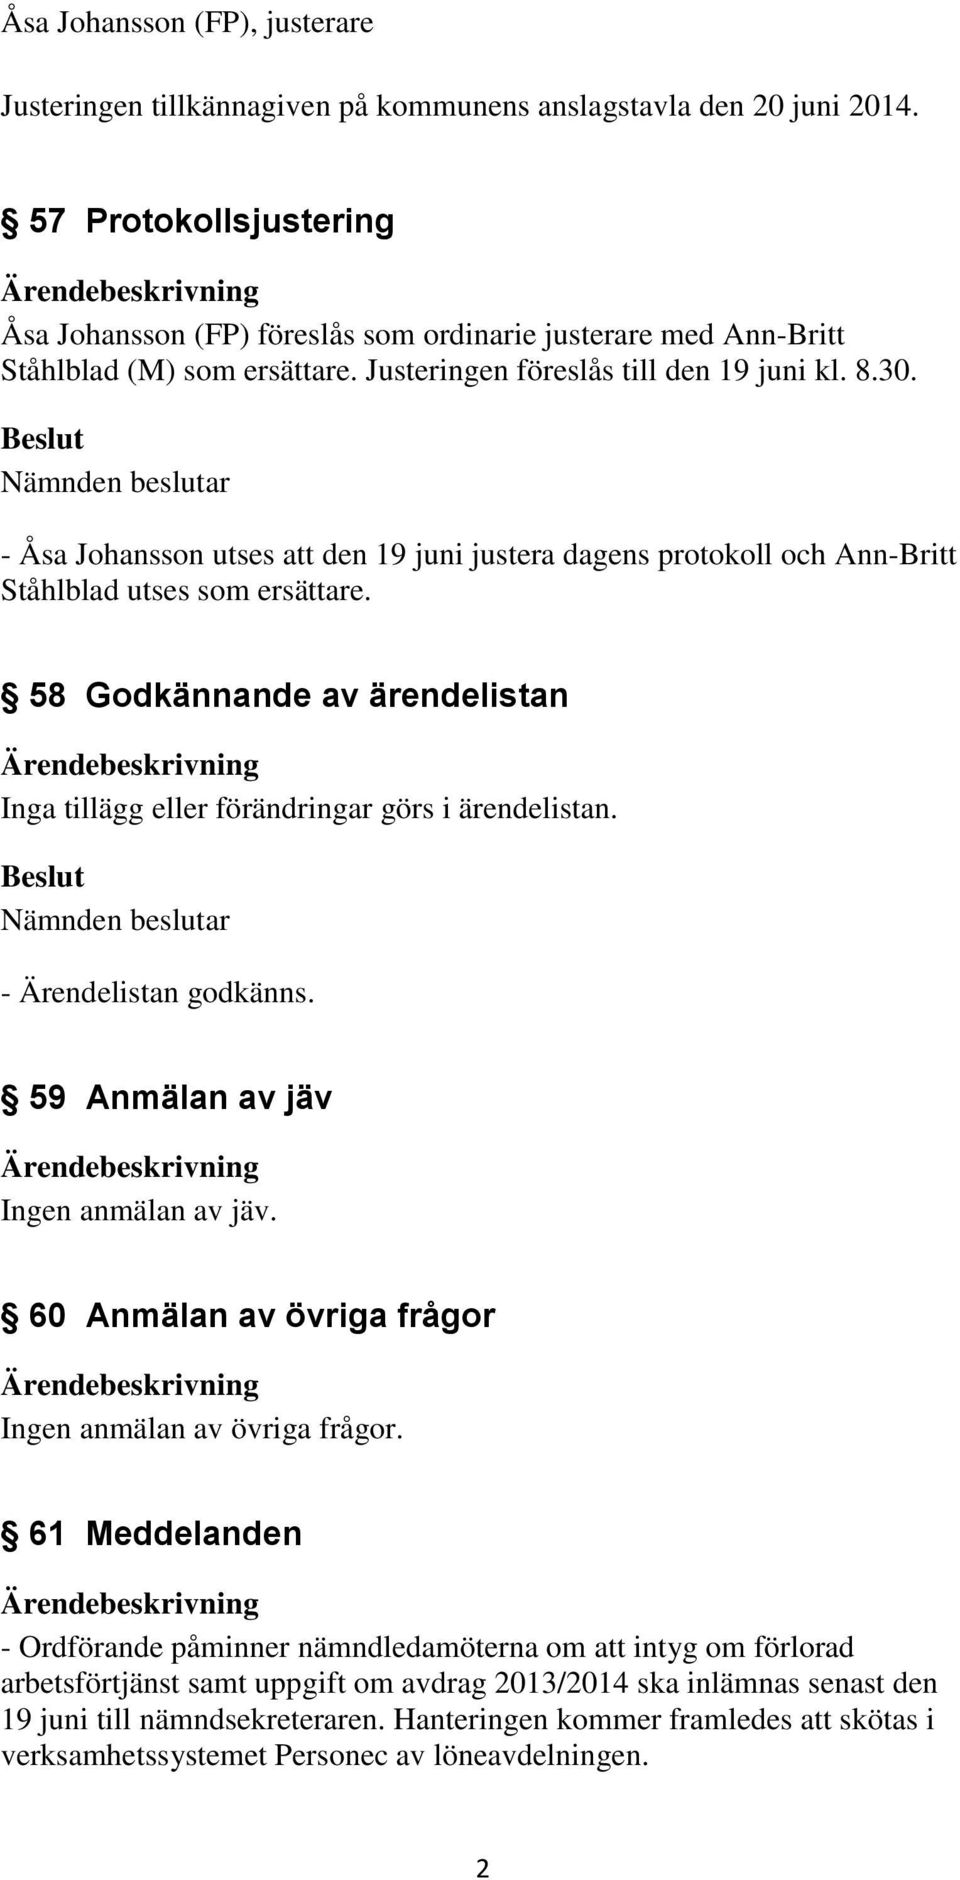 - Åsa Johansson utses att den 19 juni justera dagens protokoll och Ann-Britt Ståhlblad utses som ersättare. 58 Godkännande av ärendelistan Inga tillägg eller förändringar görs i ärendelistan.